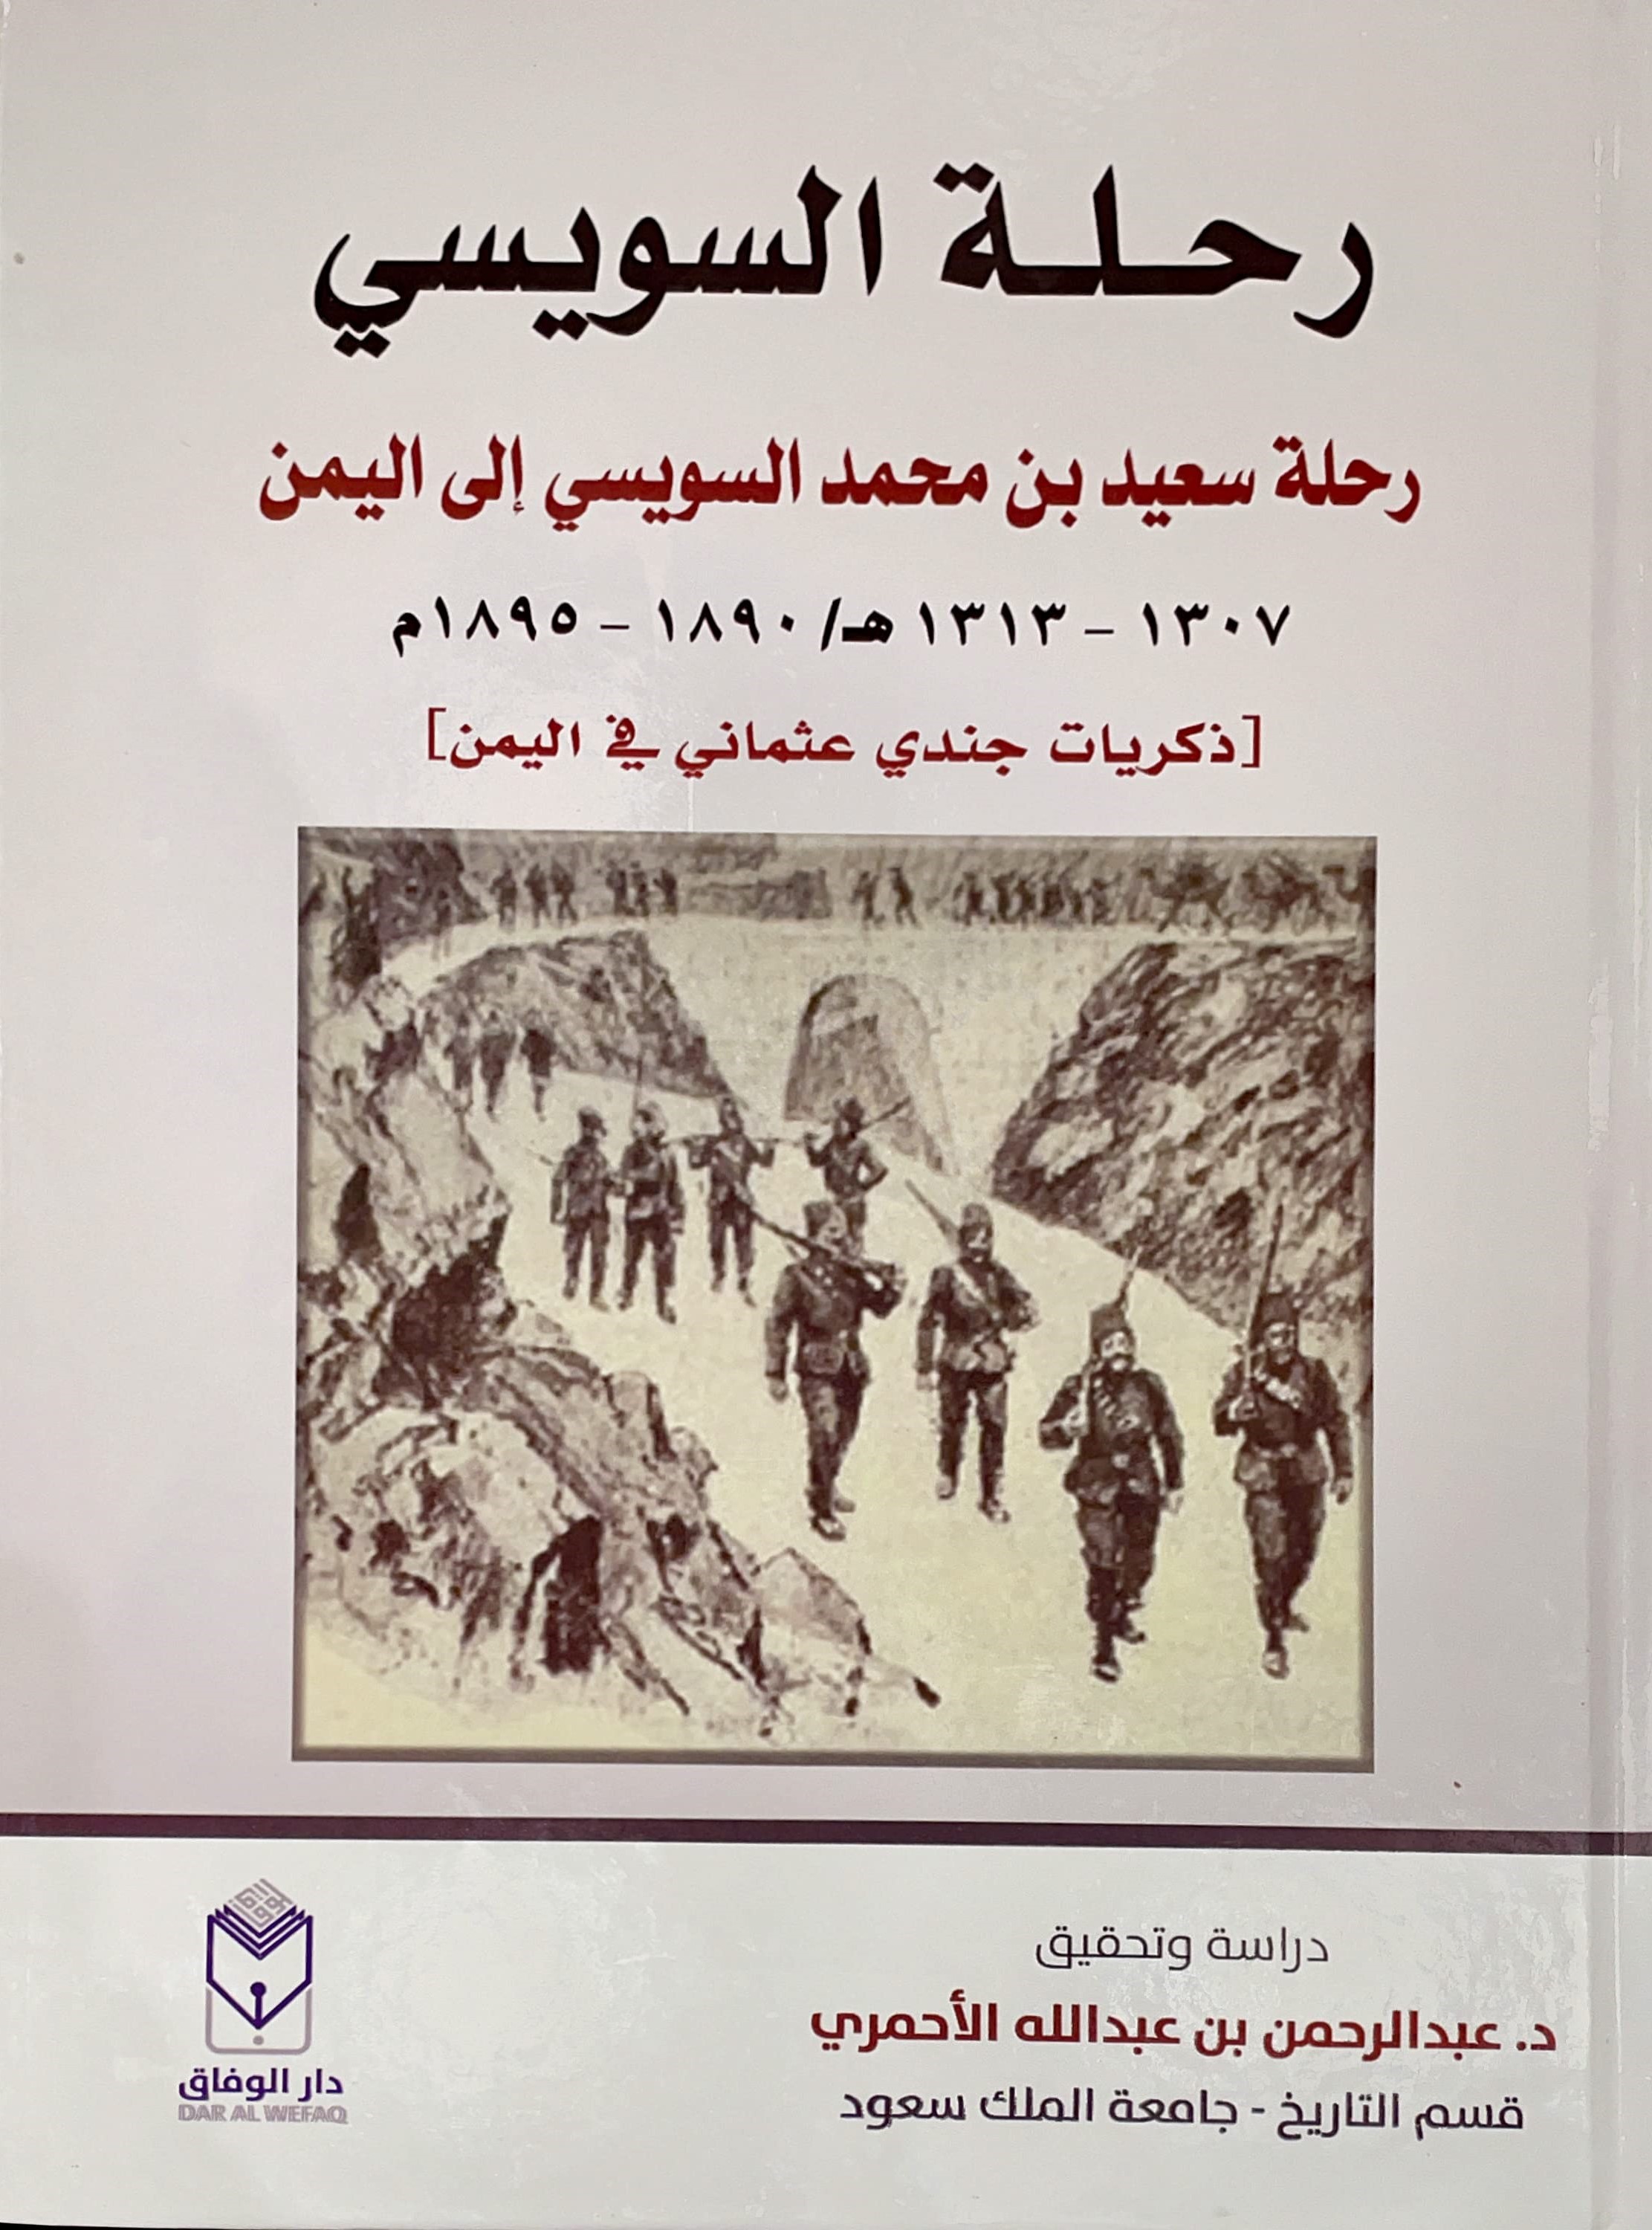 رحلة سعيد محمد السويسي إلى اليمن 1307 - 1313 هـ / 1890 - 1895 م ( ذكريات جندي عثماني في اليمن )